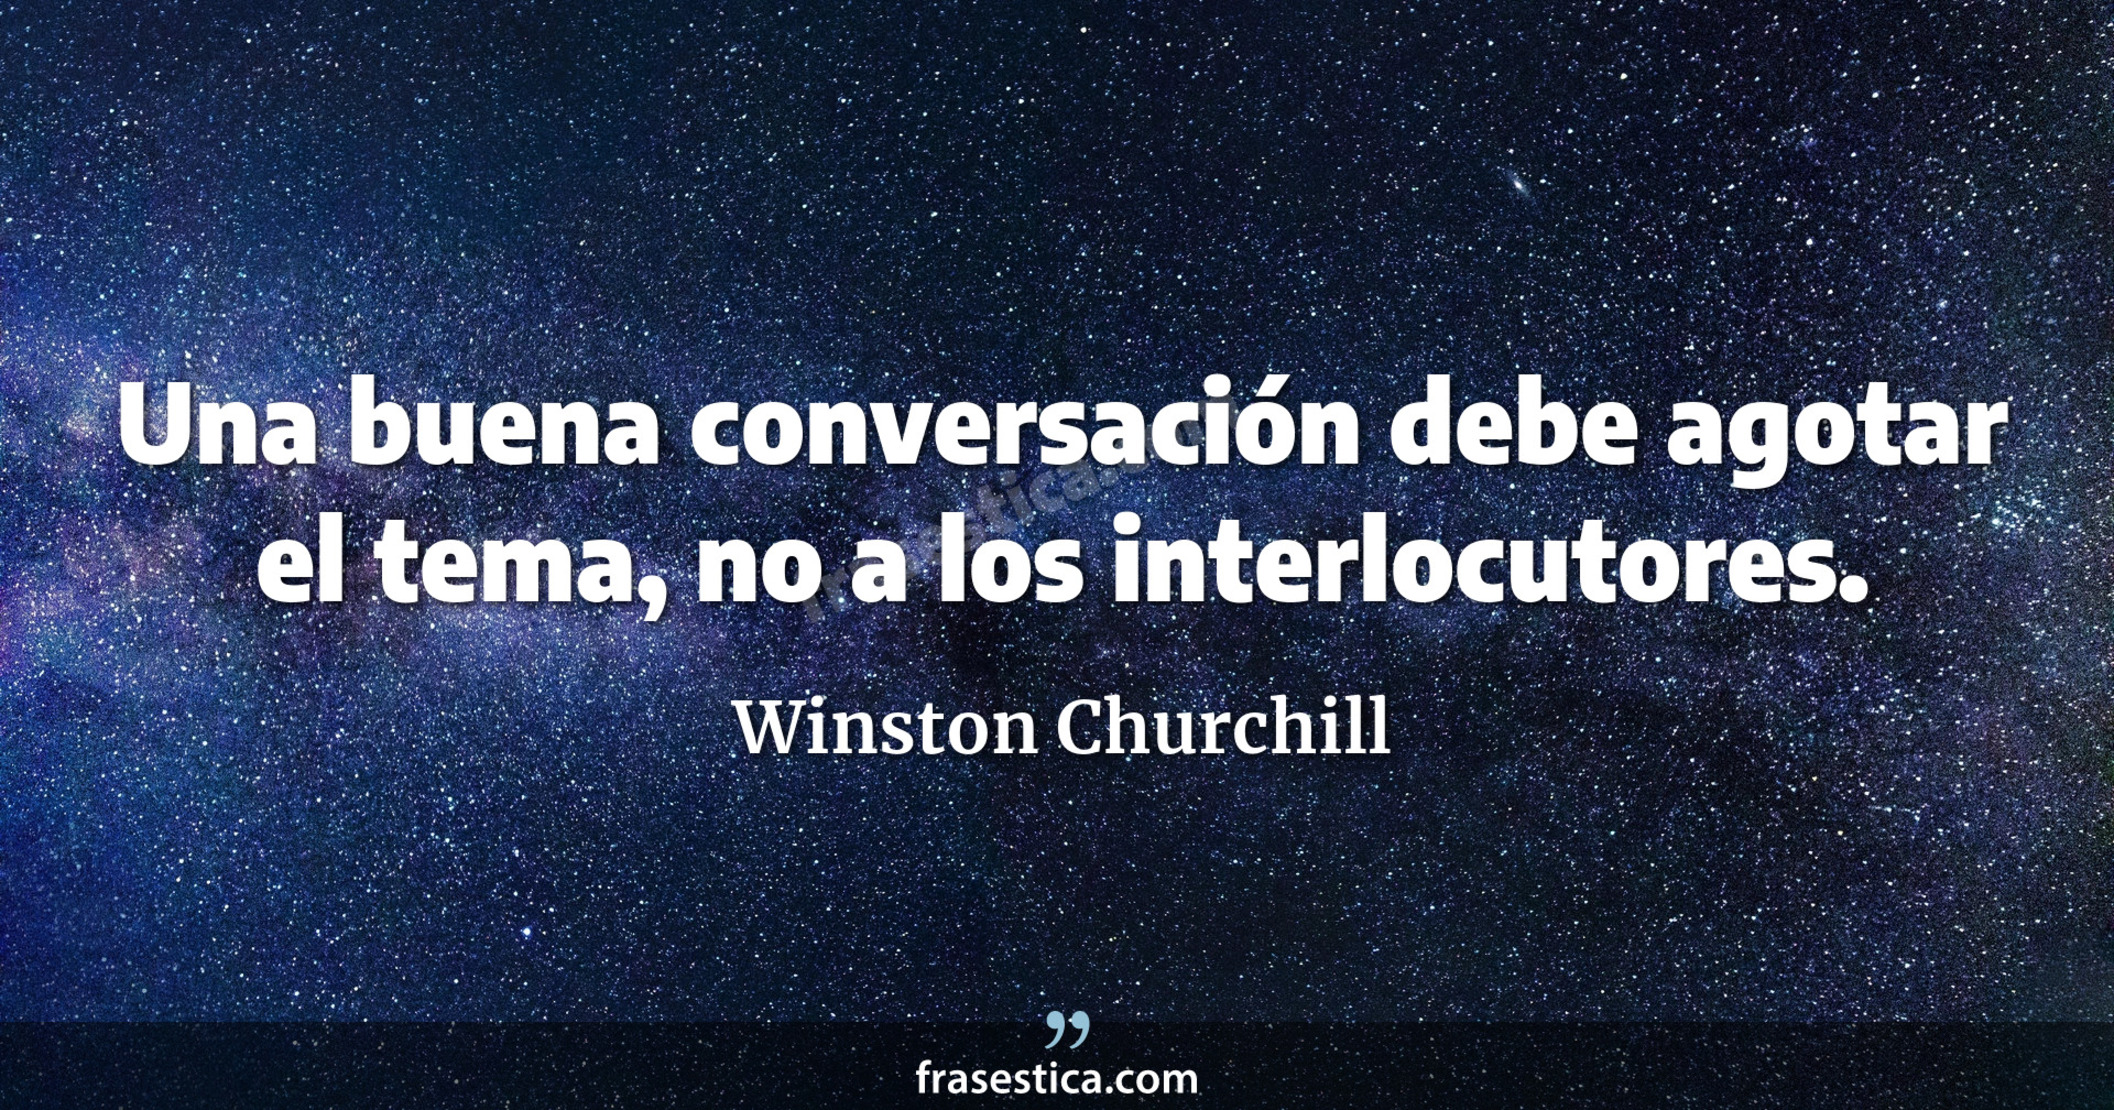 Una buena conversación debe agotar el tema, no a los interlocutores. - Winston Churchill